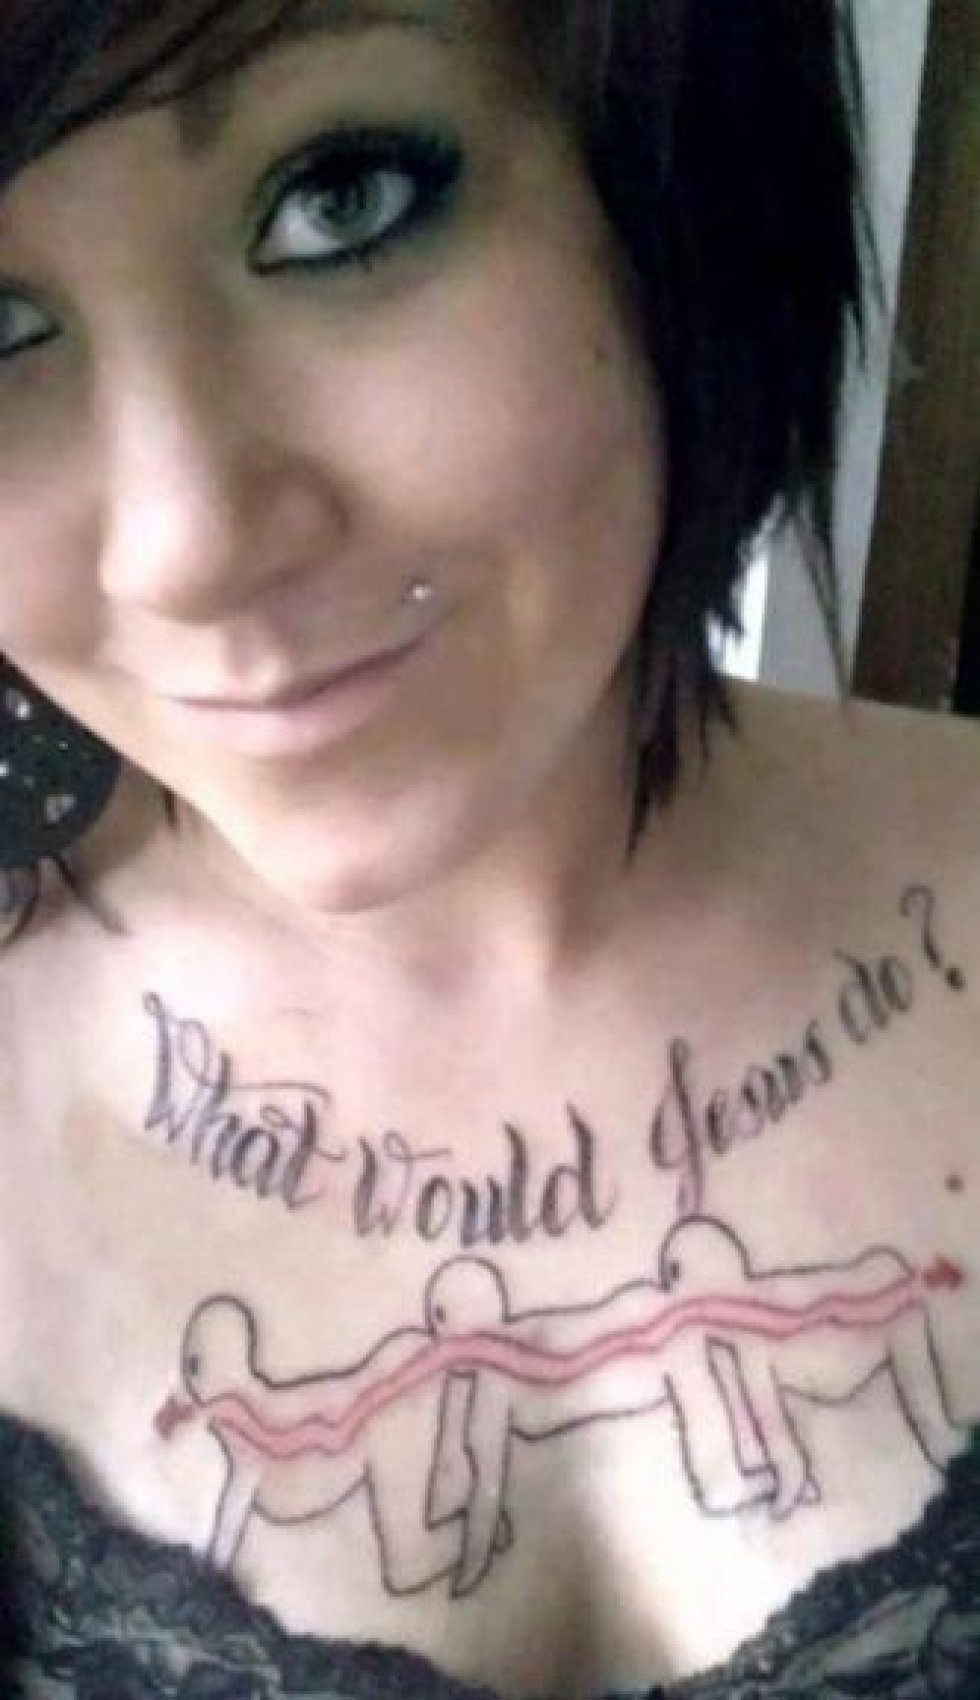 15 forfærdelige tatoveringer, der ødelægger et ellers sæt virkelig flotte bryster